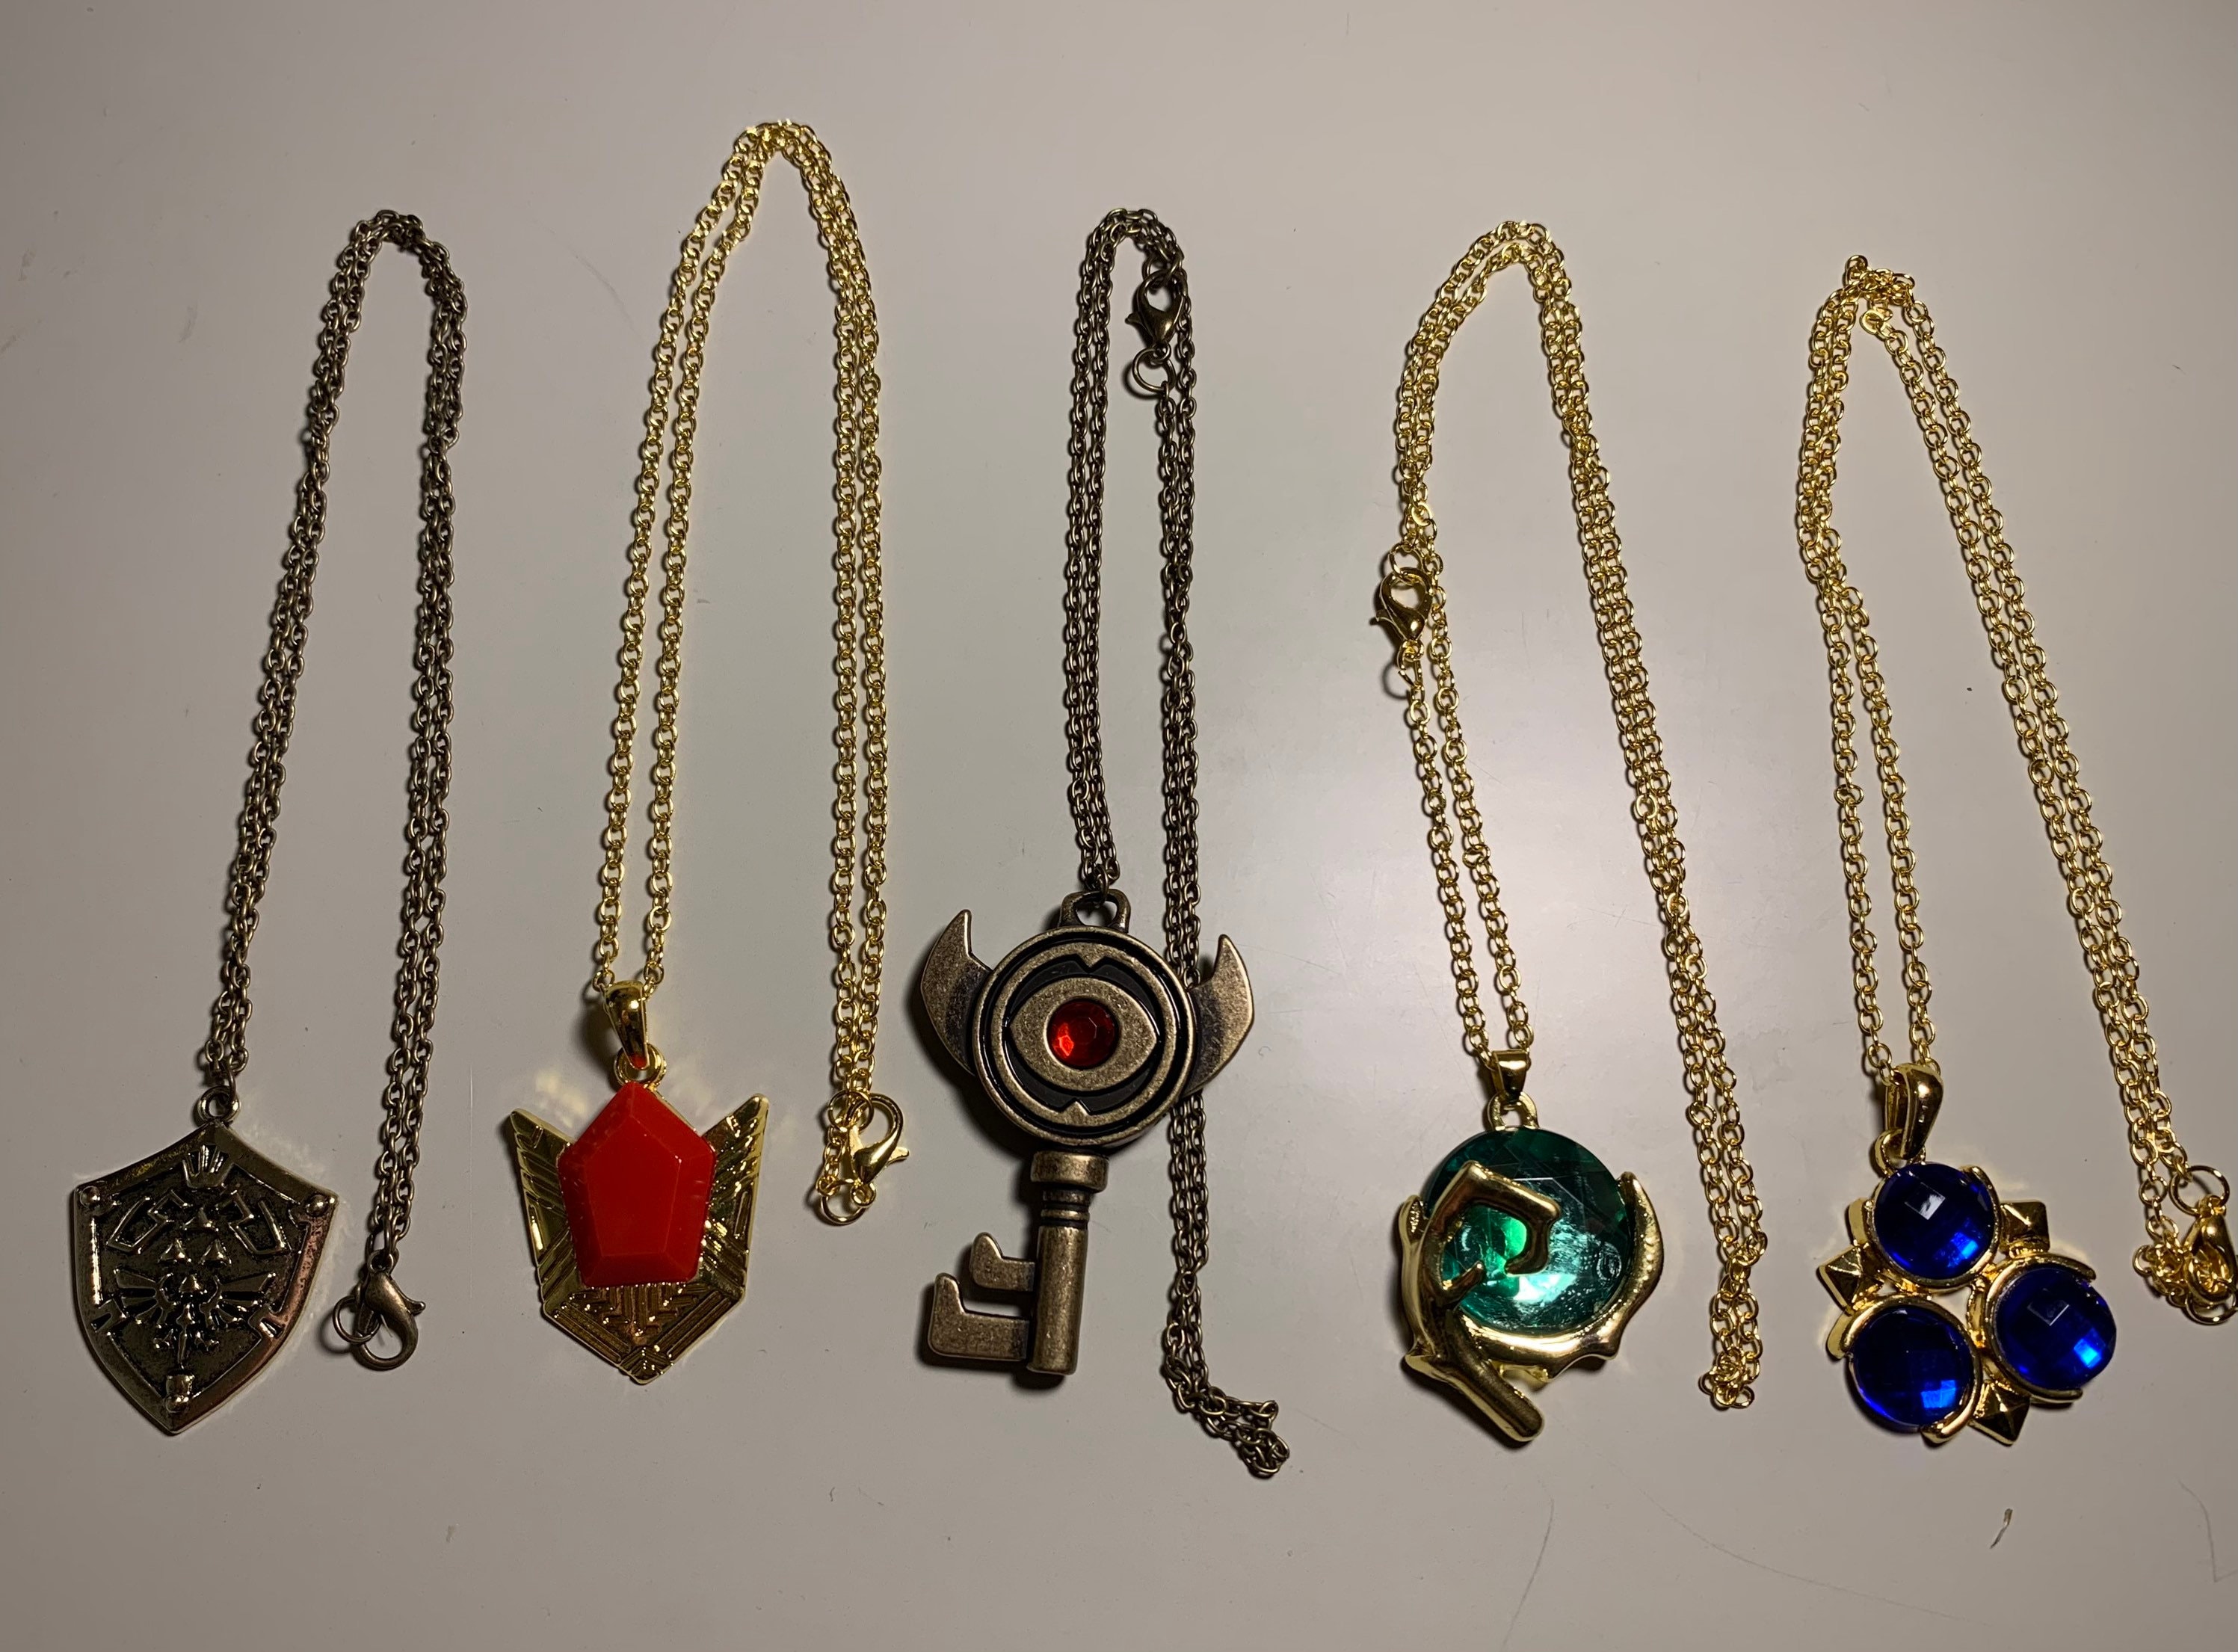 Legend of Zelda Link Cartoon Character Charm Pendant Necklace - Walmart.com